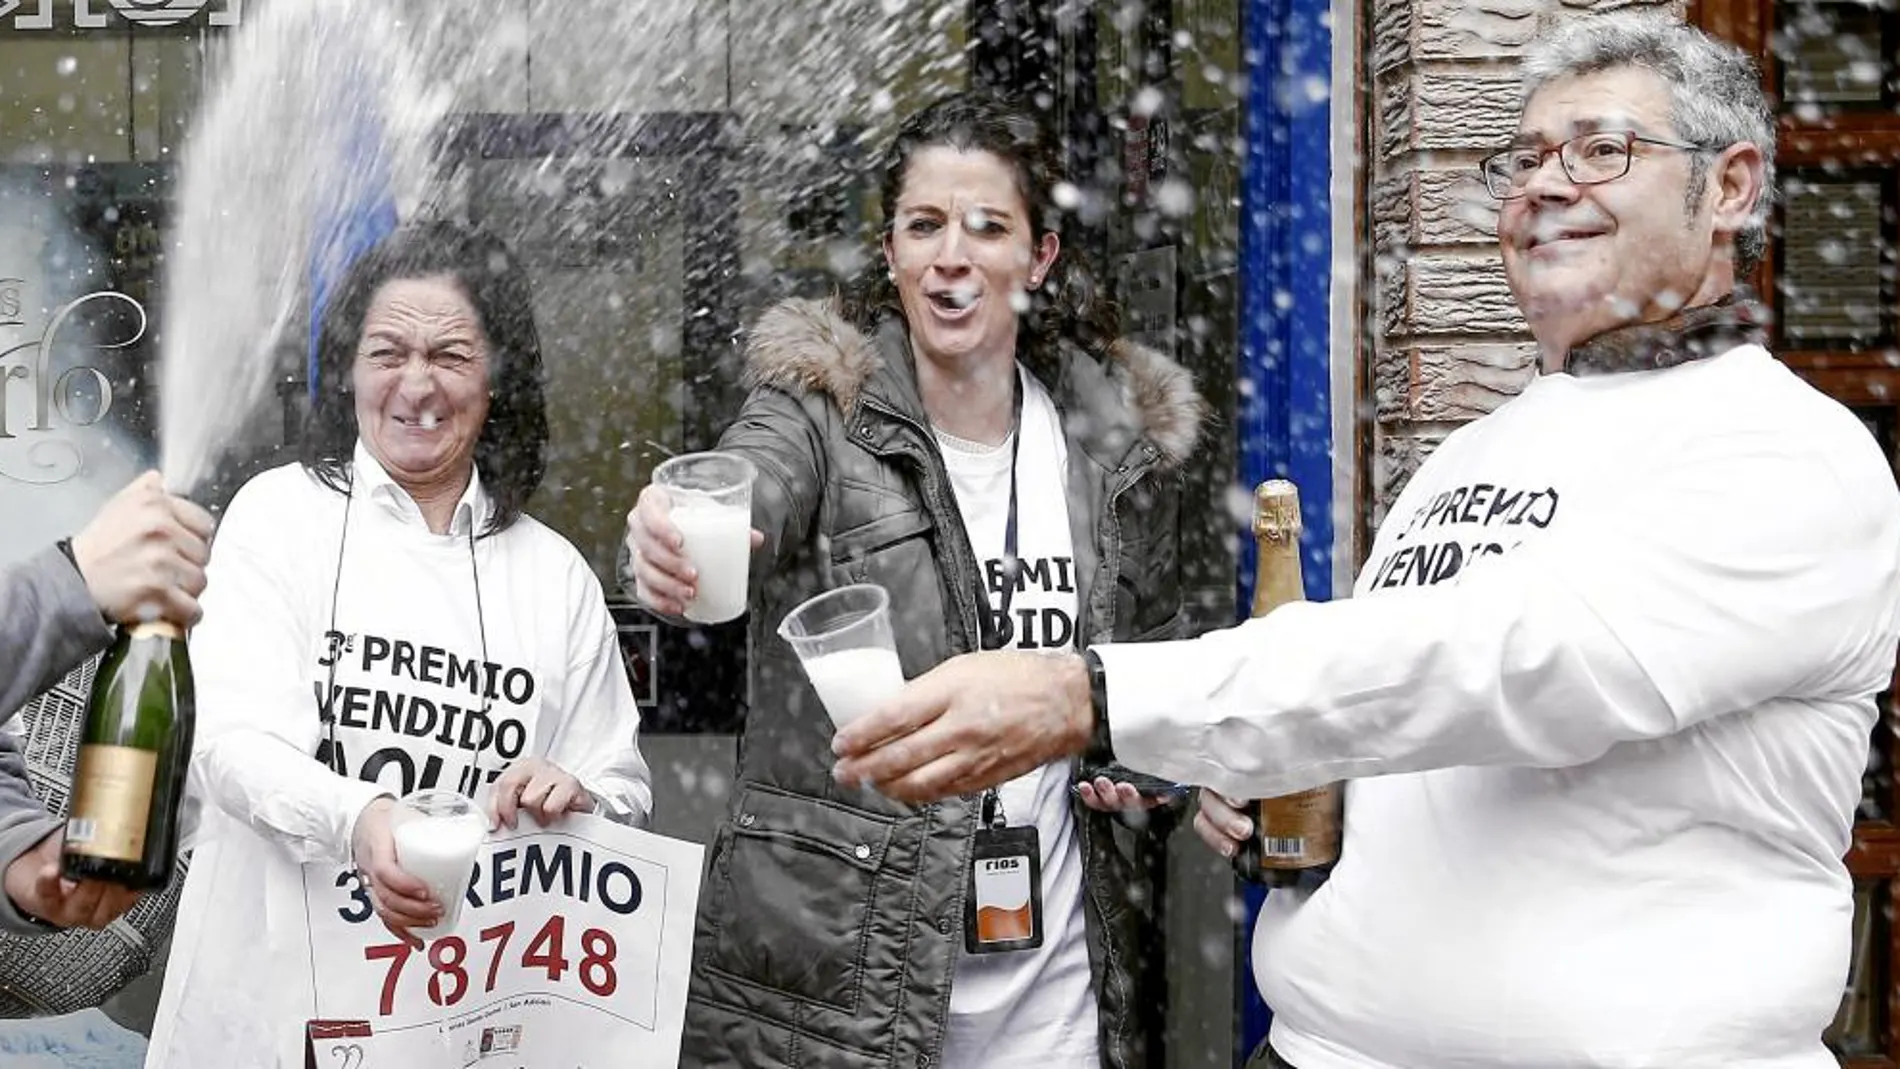 Los dueños de la administración de loterías de San Adrián, en Navarra, repartieron ayer más de 80 millones de euros en premios